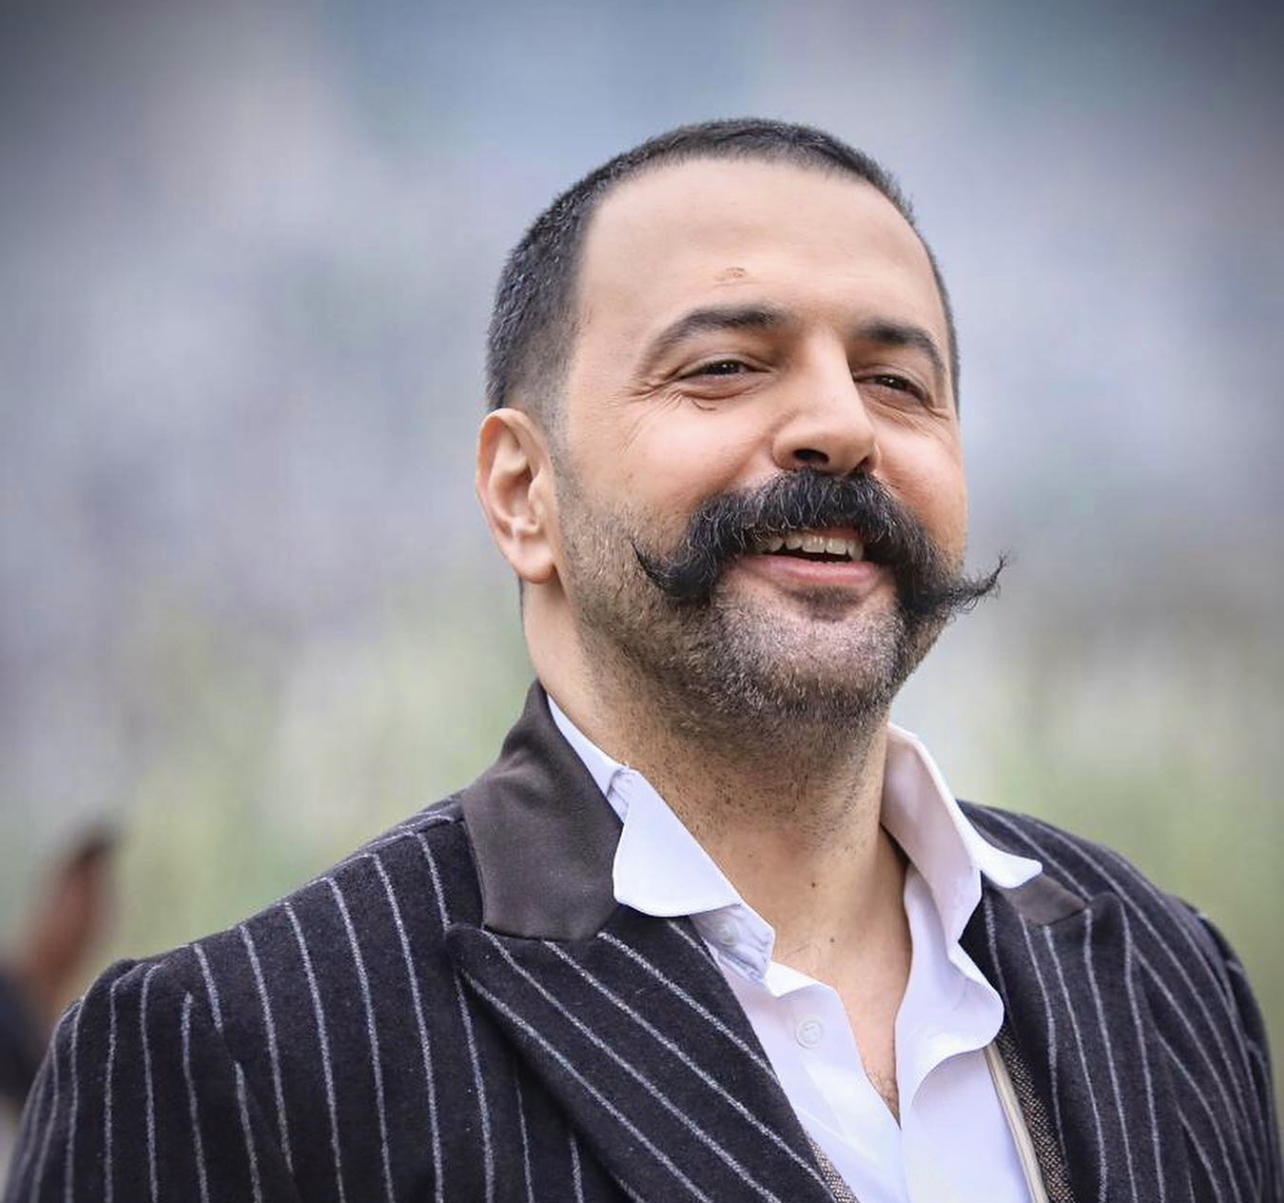 الممثل السوري تيم حسن في مسلسل "الزند" - إنترنت